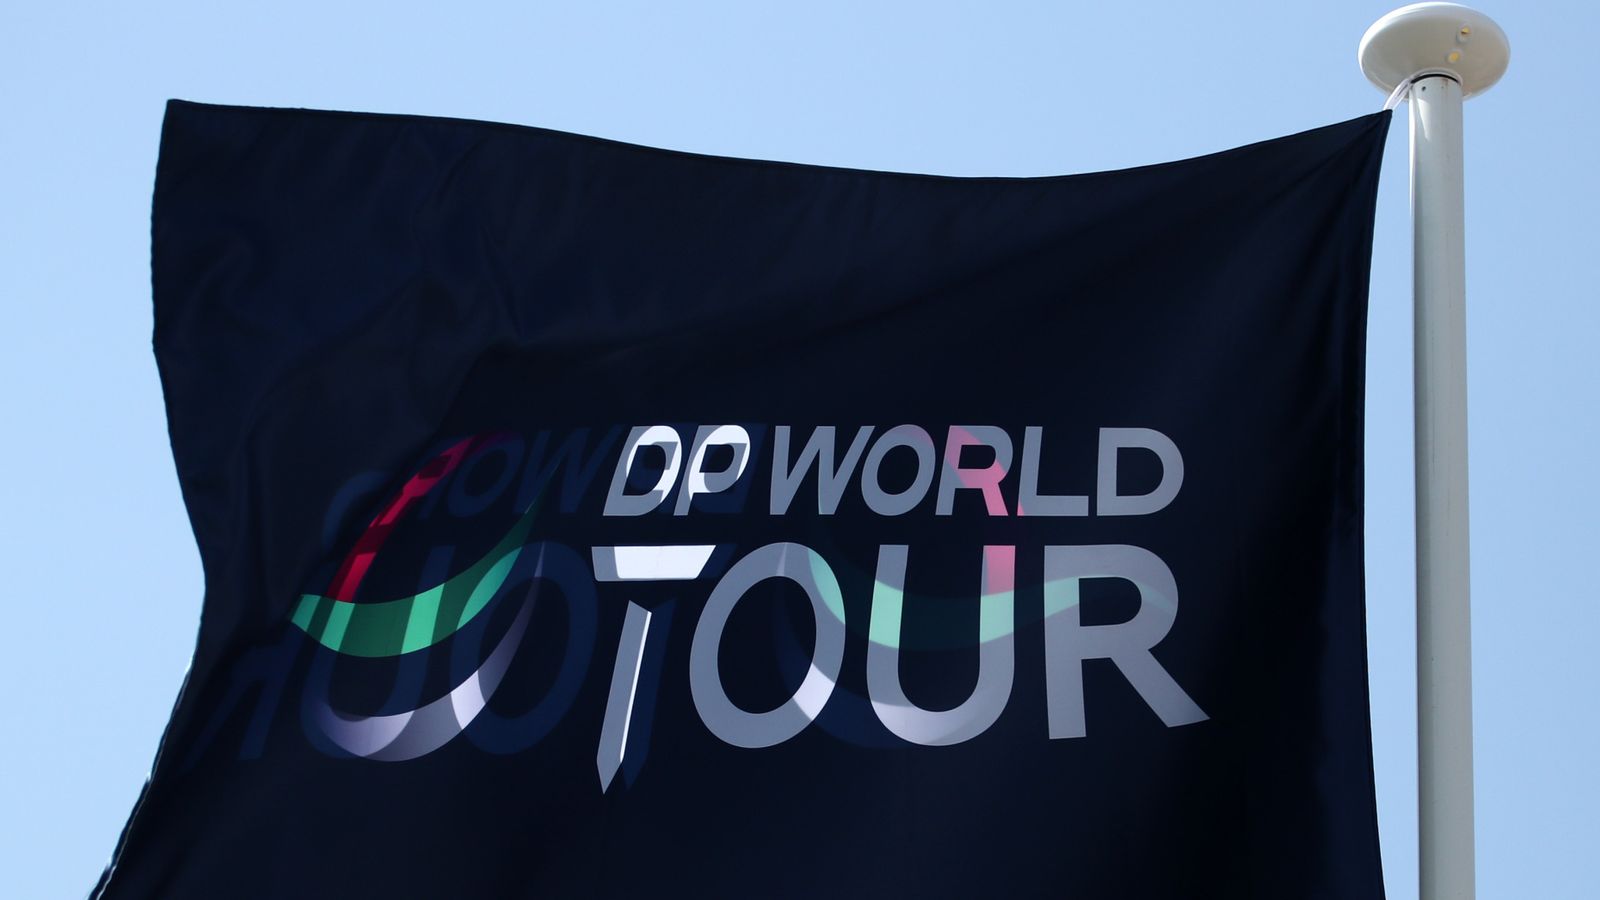 dp world tour definition